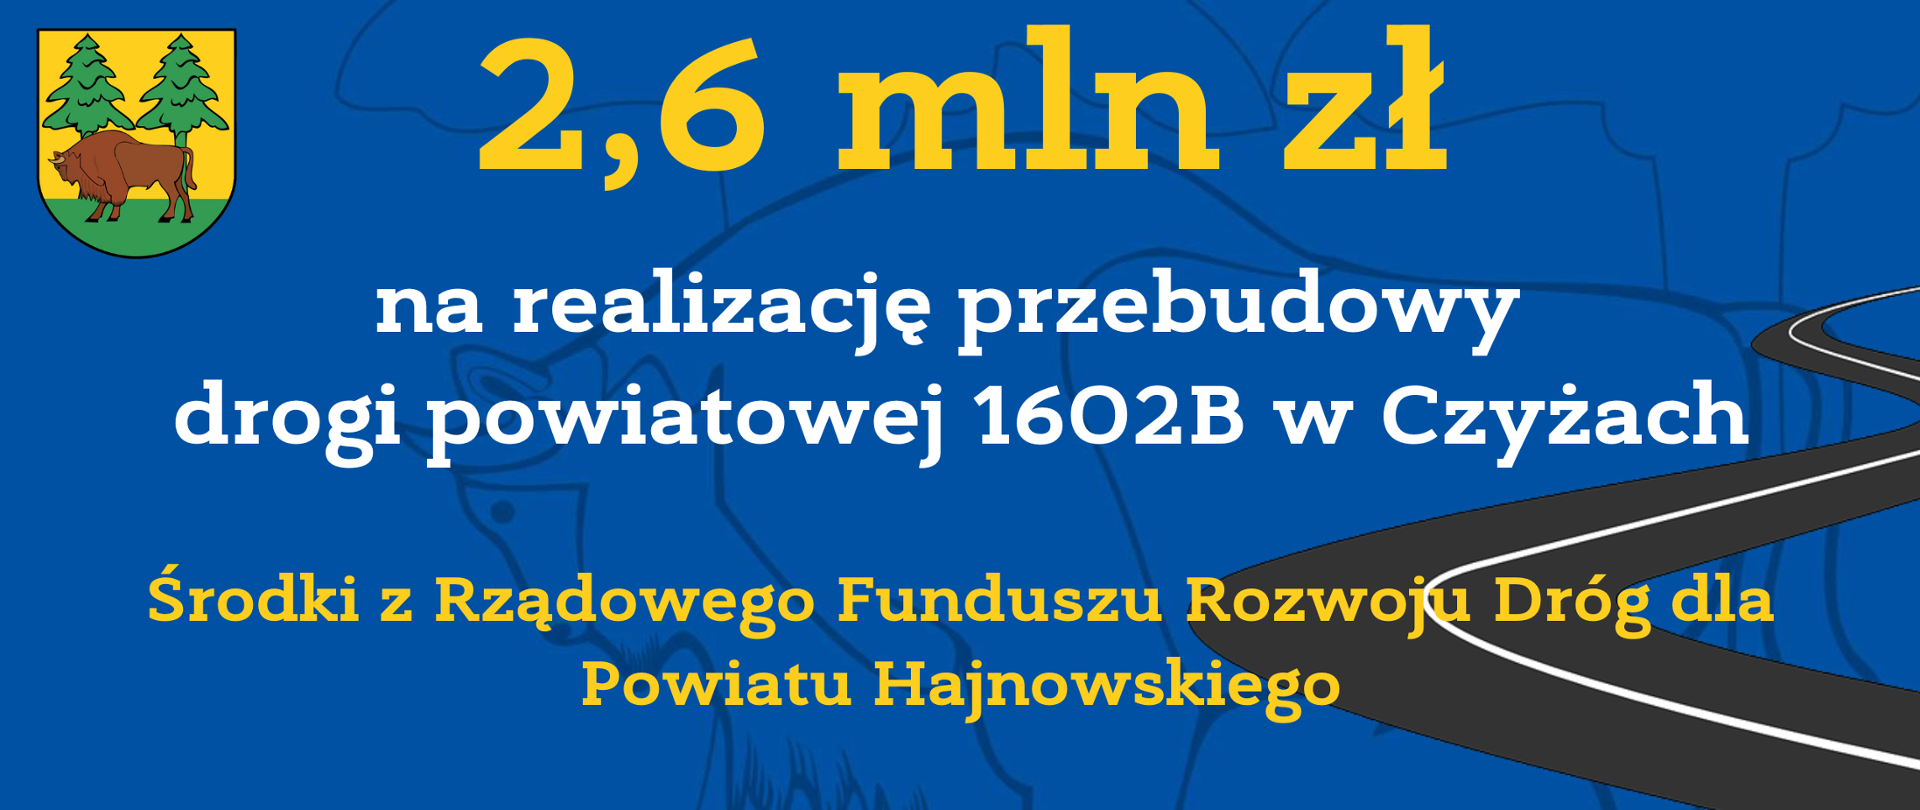 2,6 mln zł na realizację przebudowy drogi powiatowej 1602B w Czyżach. Środki z Rządowego Funduszu Rozwoju Dróg dla Powiatu Hajnowskiego